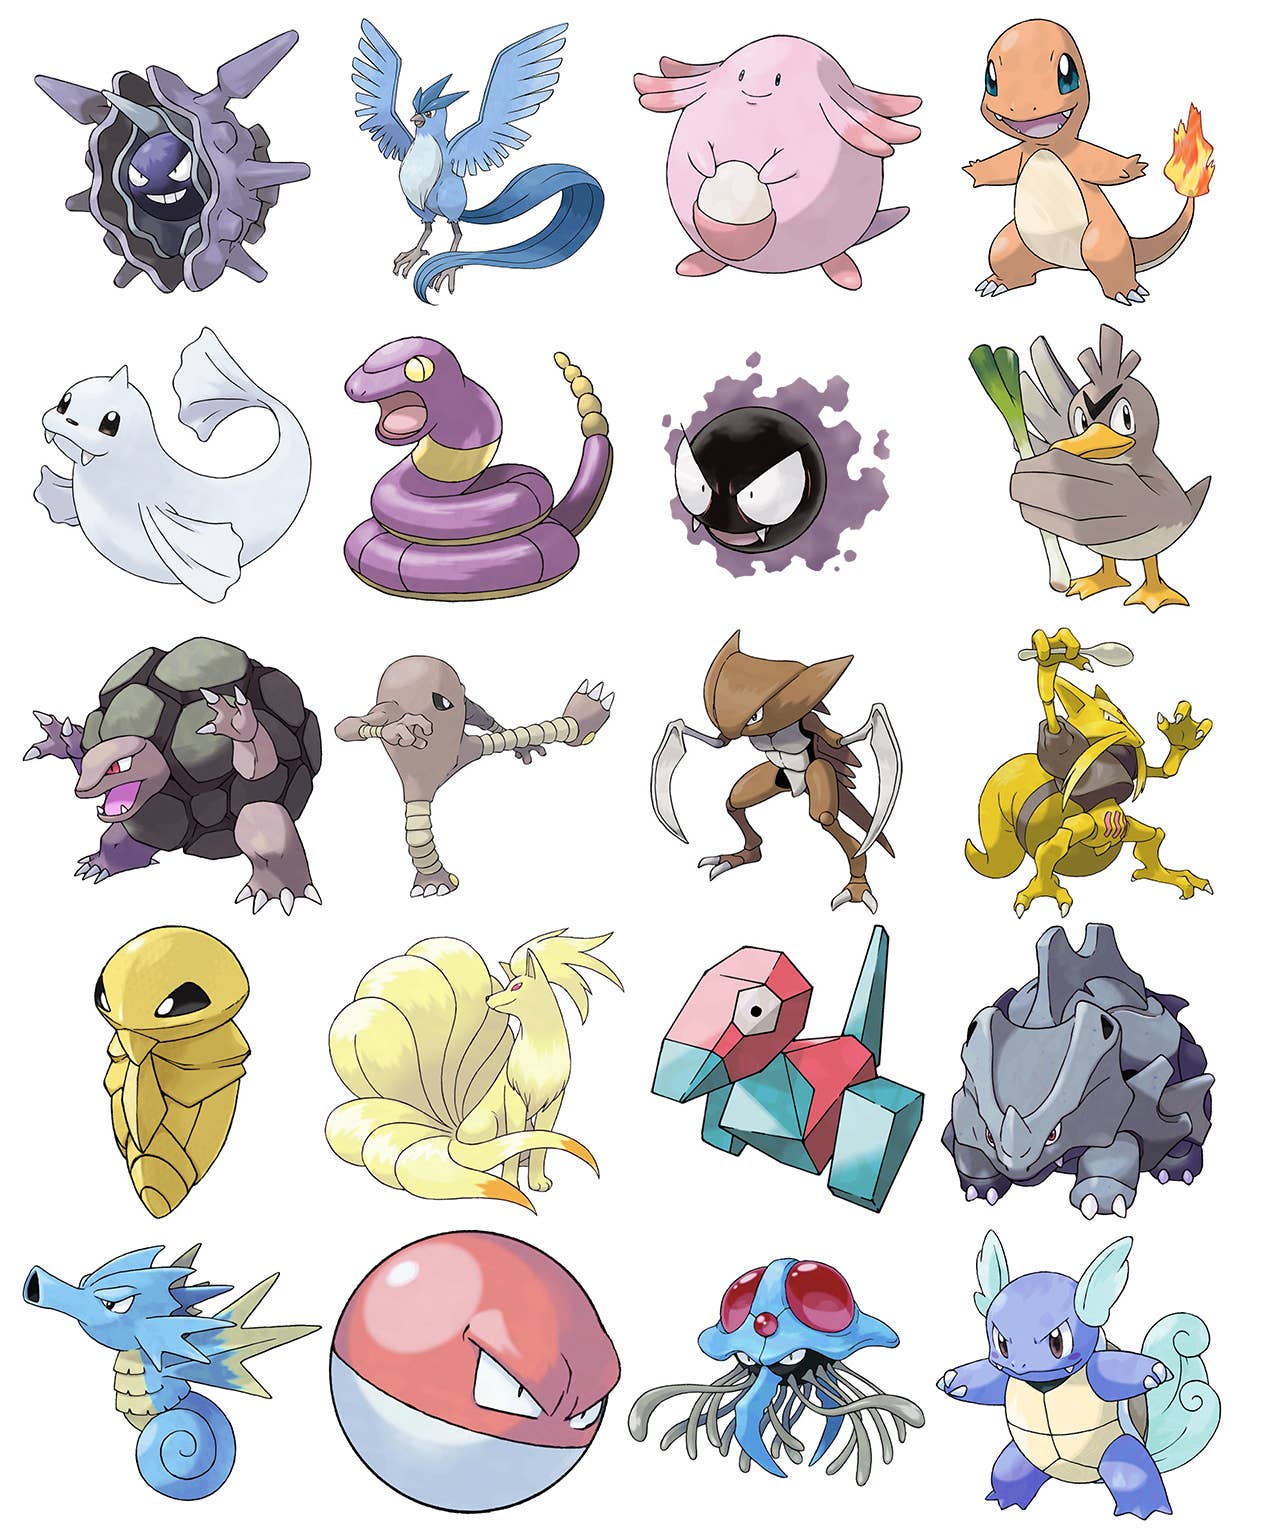 Pokyfriends - Pokémon Size Quiz